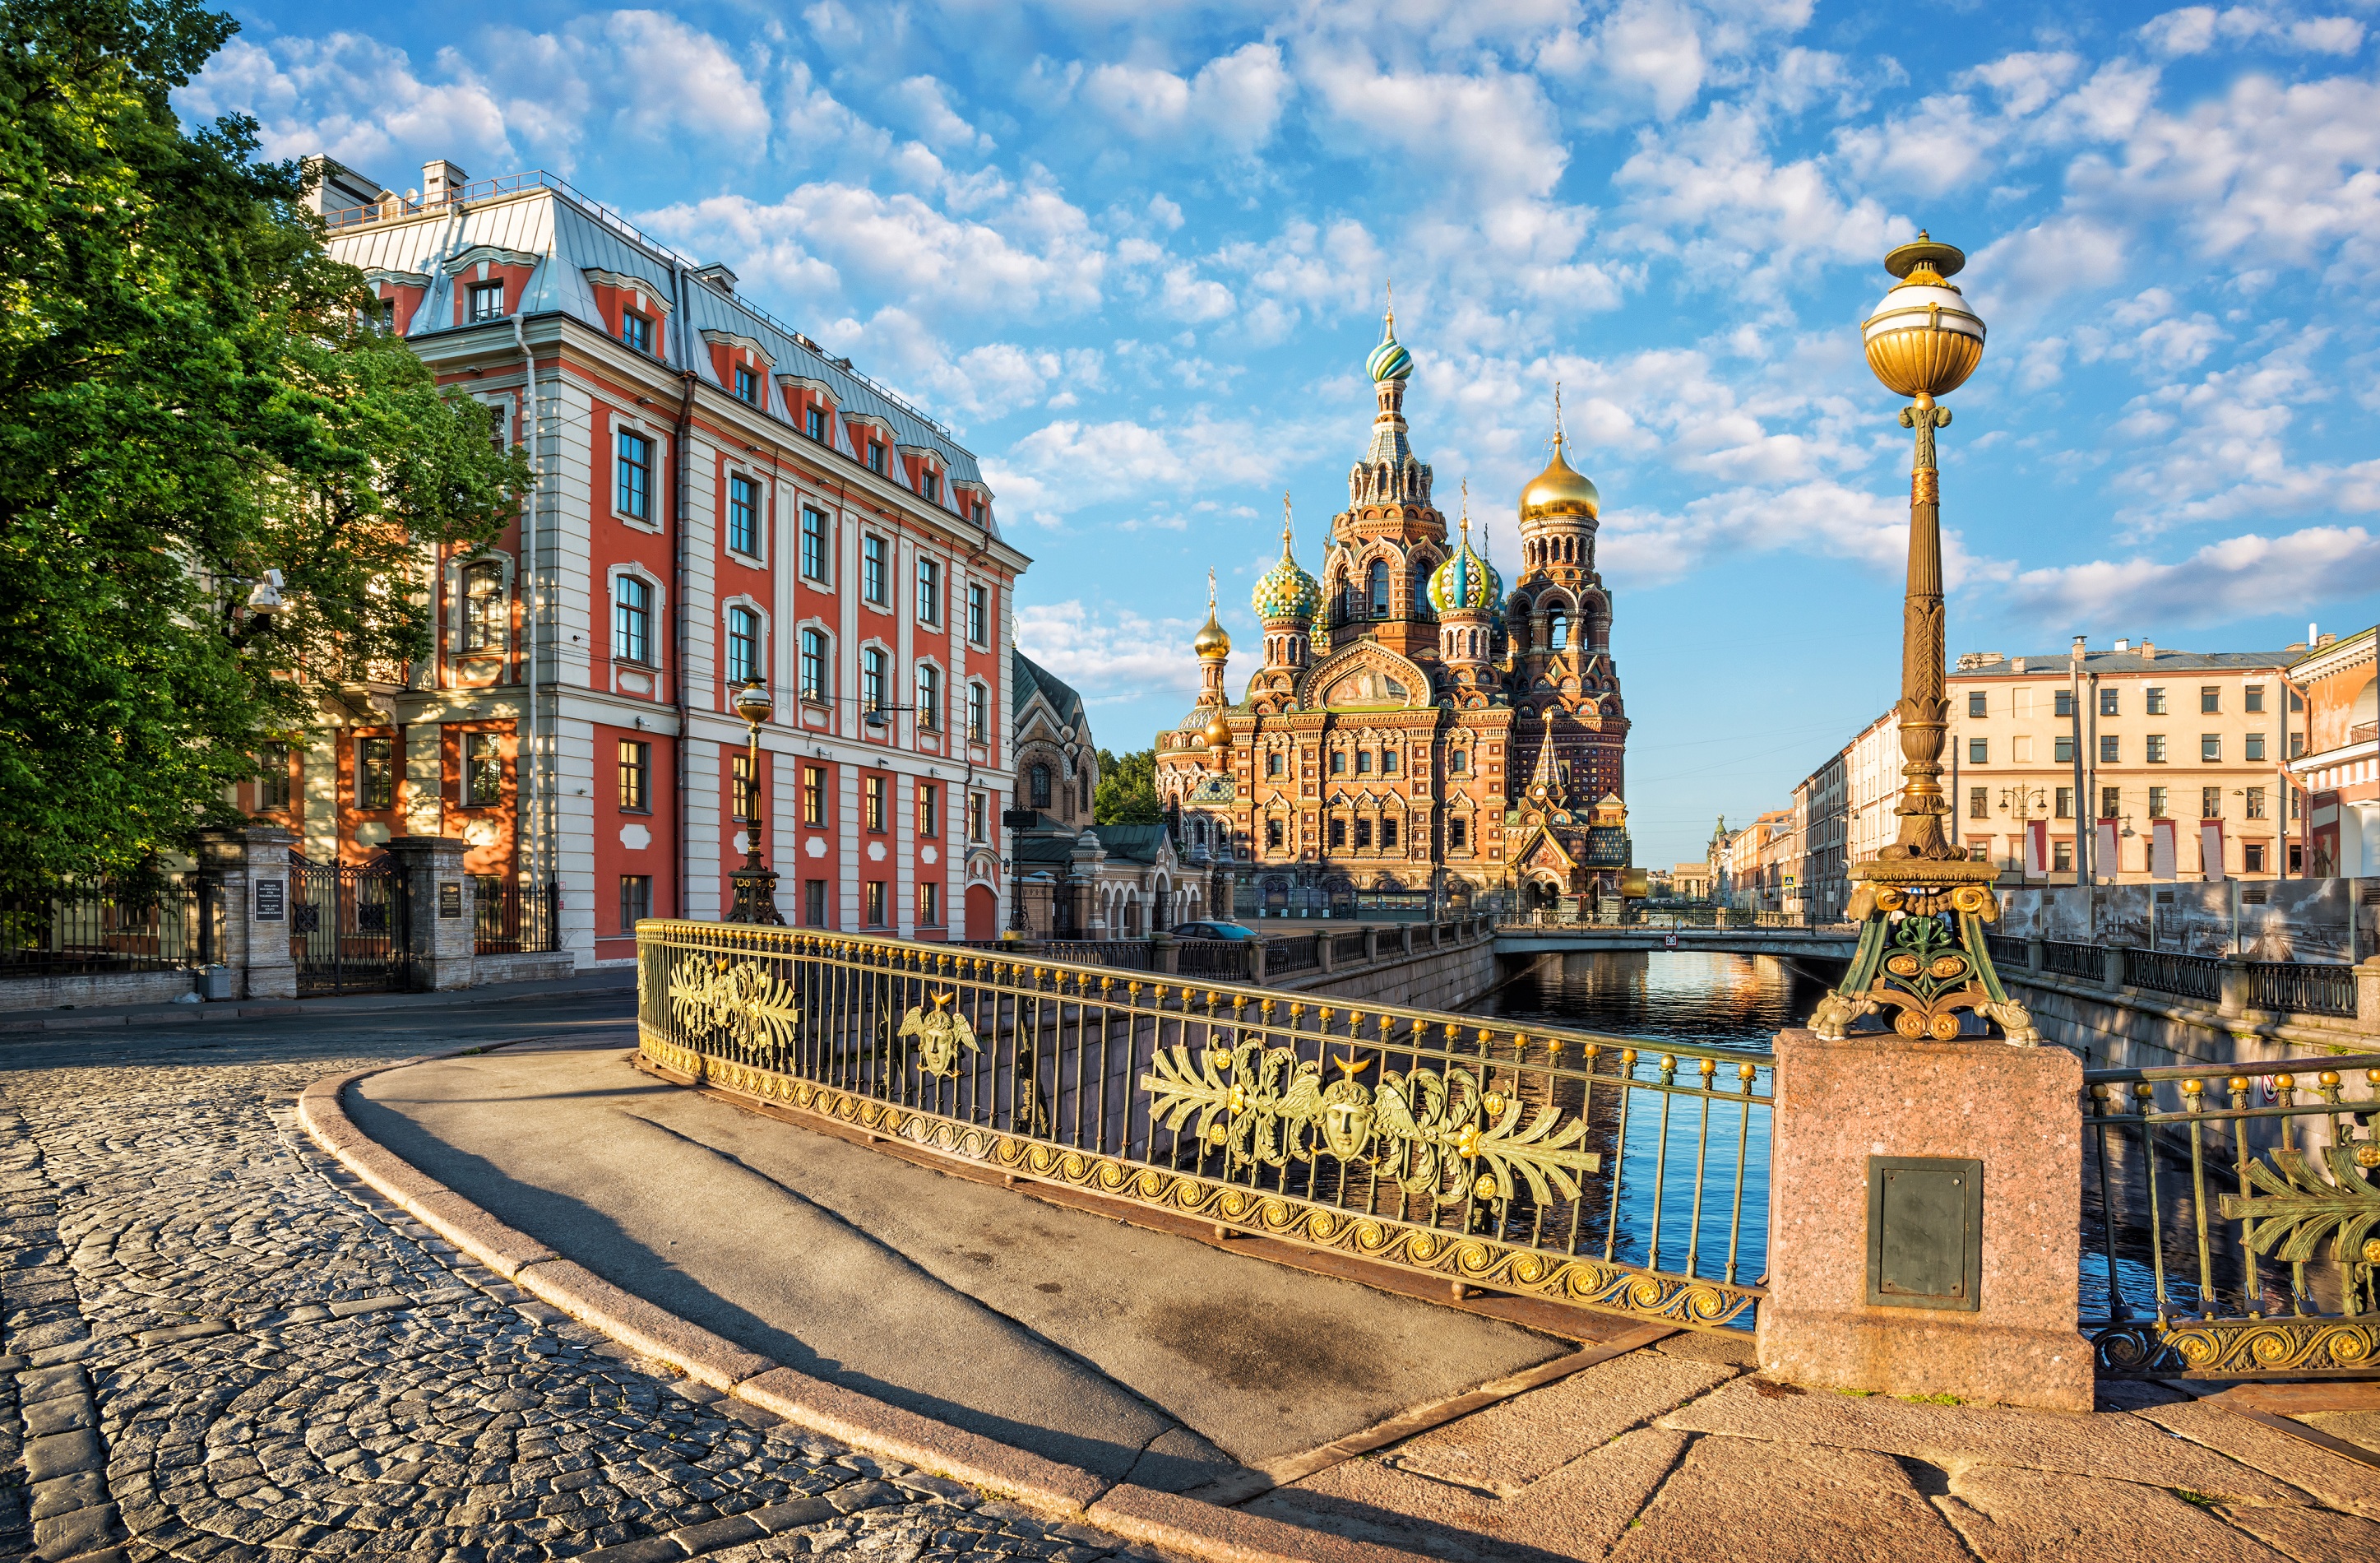 Туры для школьников в Санкт-Петербург